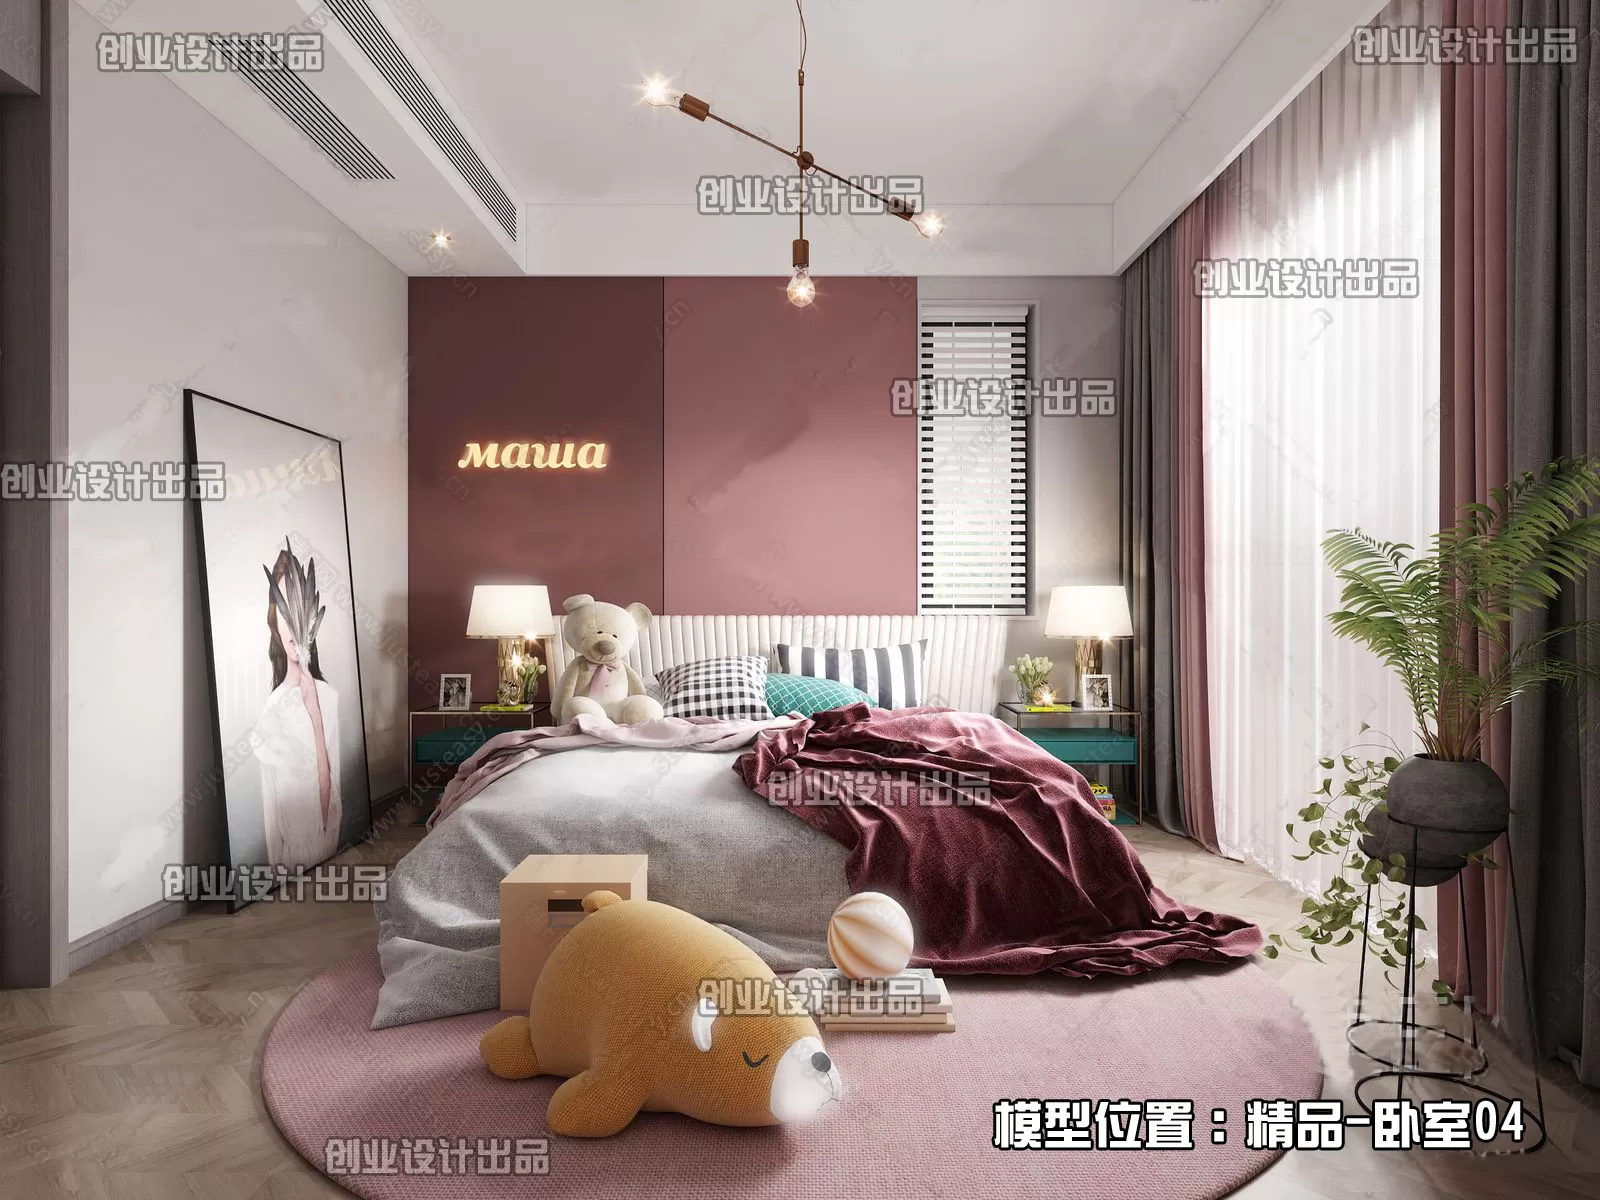 Bedroom – Modern Interior Design – 3D Models – 150